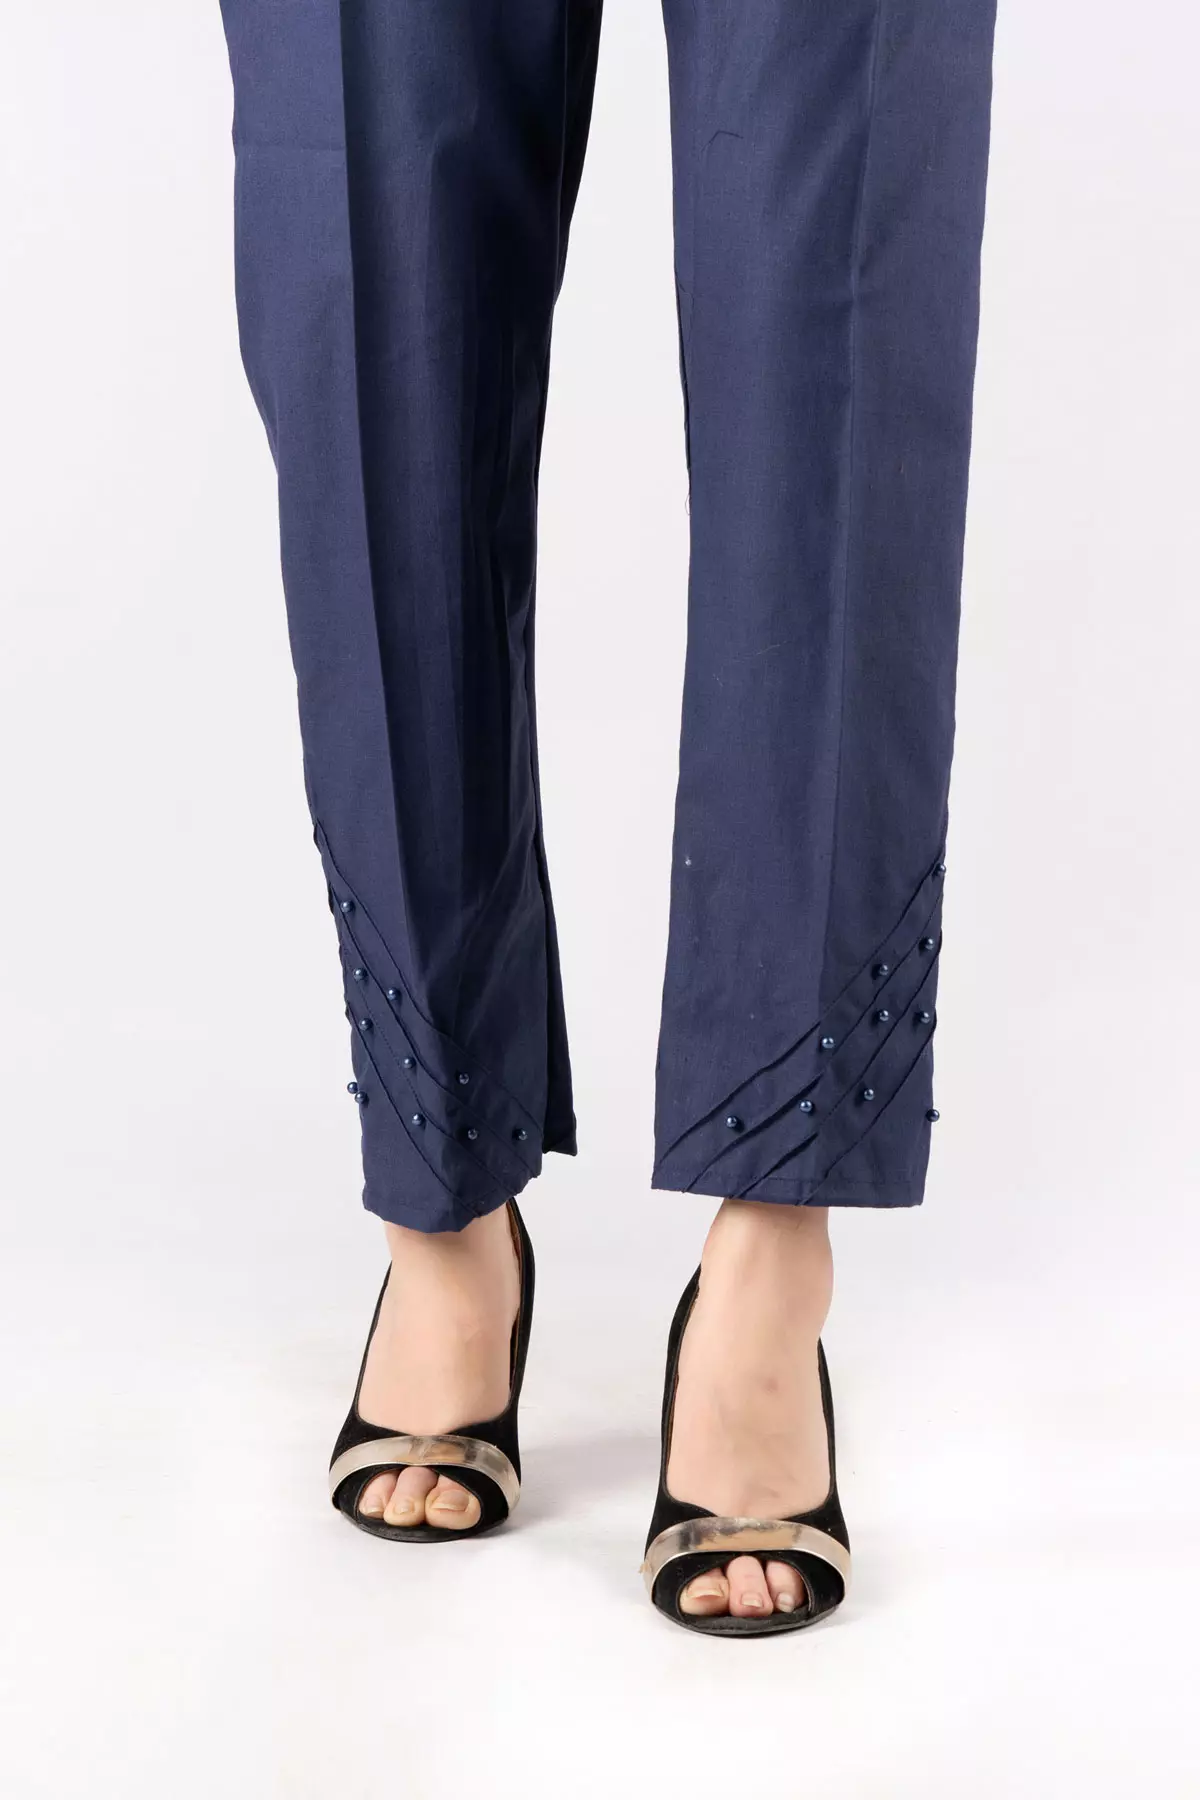 Eid Special Trouser design for girls | Stylish trouser design 2022 - YouTube-anthinhphatland.vn